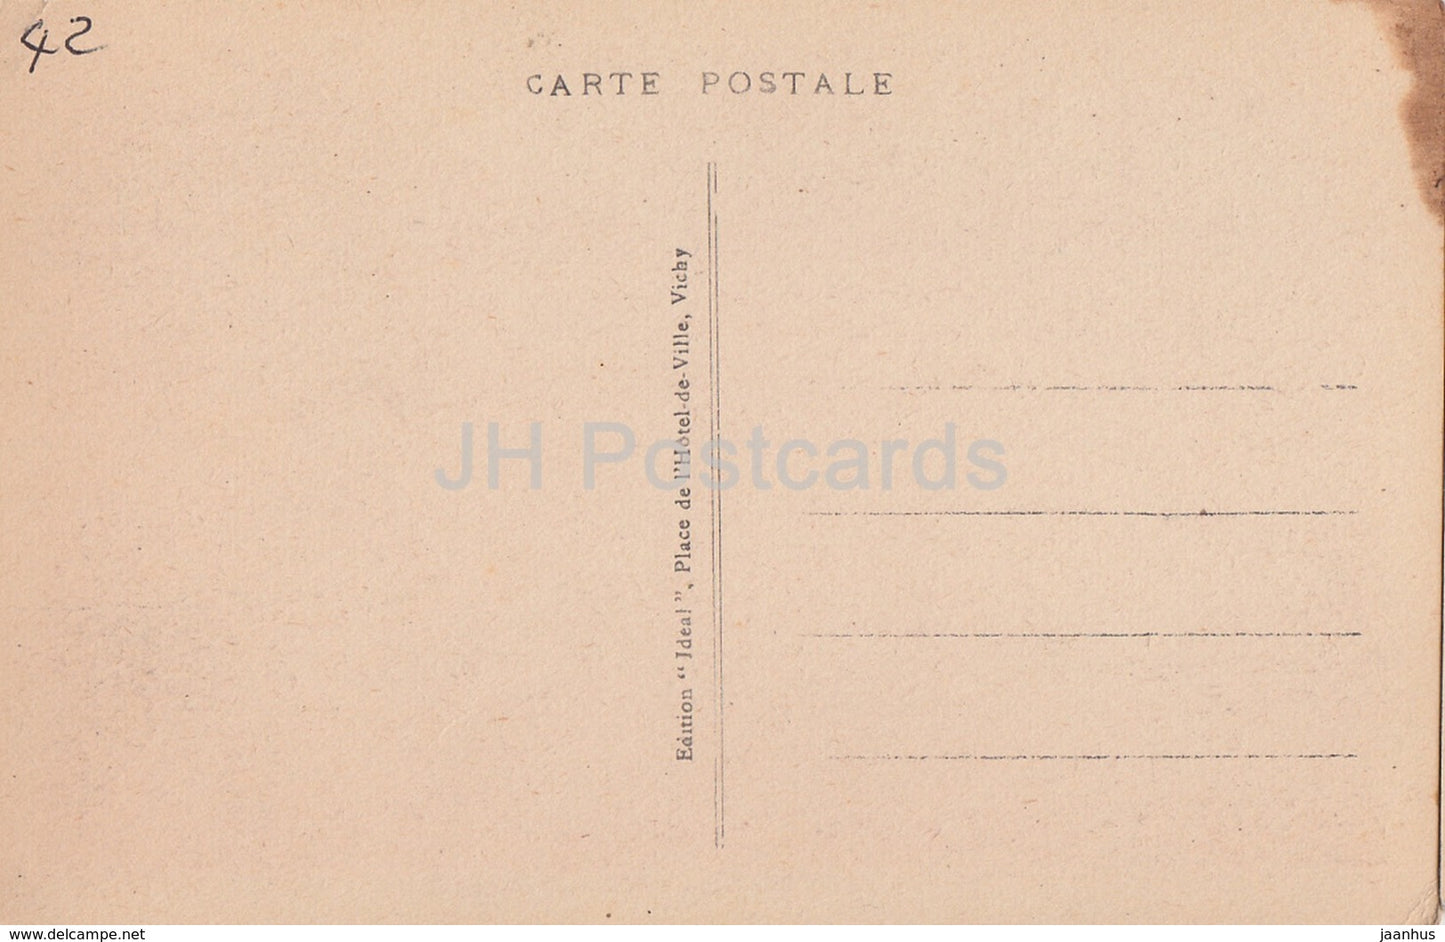 Le Coteau - Chateau de Renneville - Schloss - 5107 - alte Postkarte - Frankreich - unbenutzt